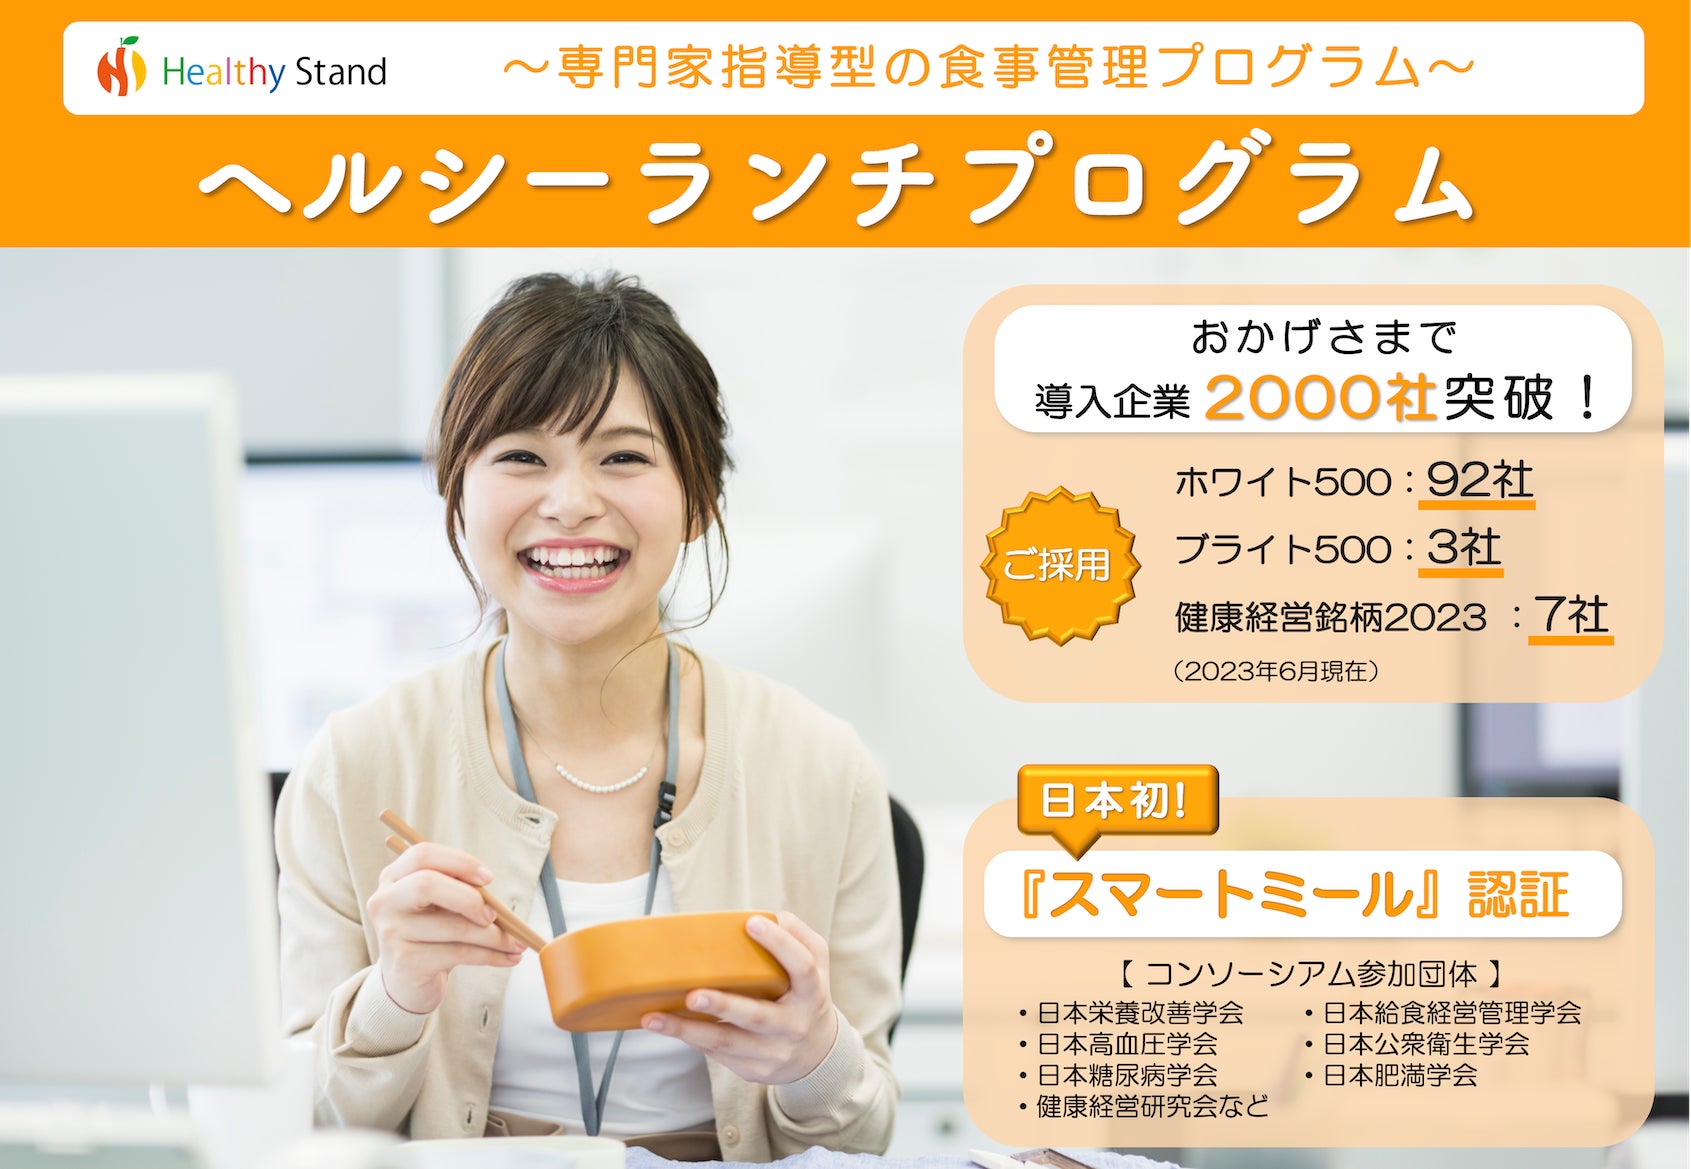 【ヘルシーランチで健康経営®応援キャンペーン】日本初のスマートミール認証弁当をオフィスにお届け